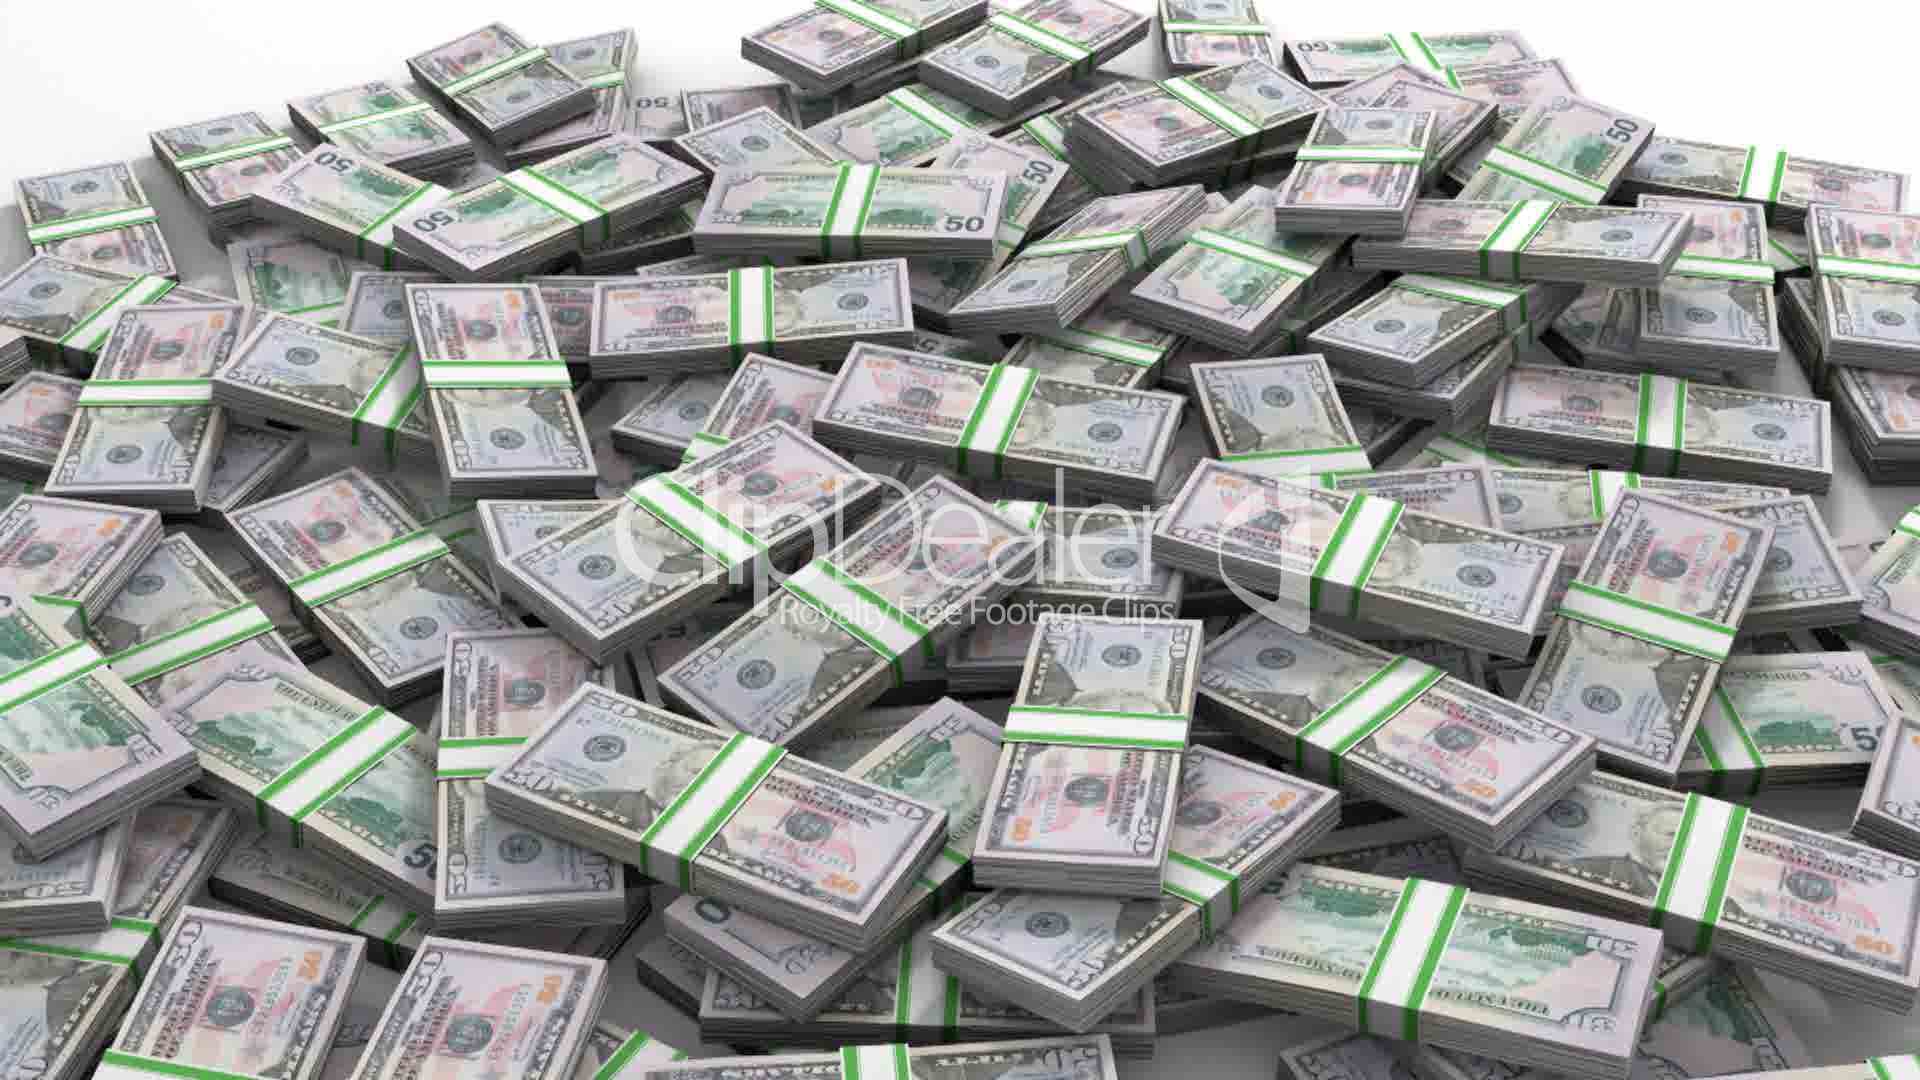 dolarovky v paklících na velké hromadě